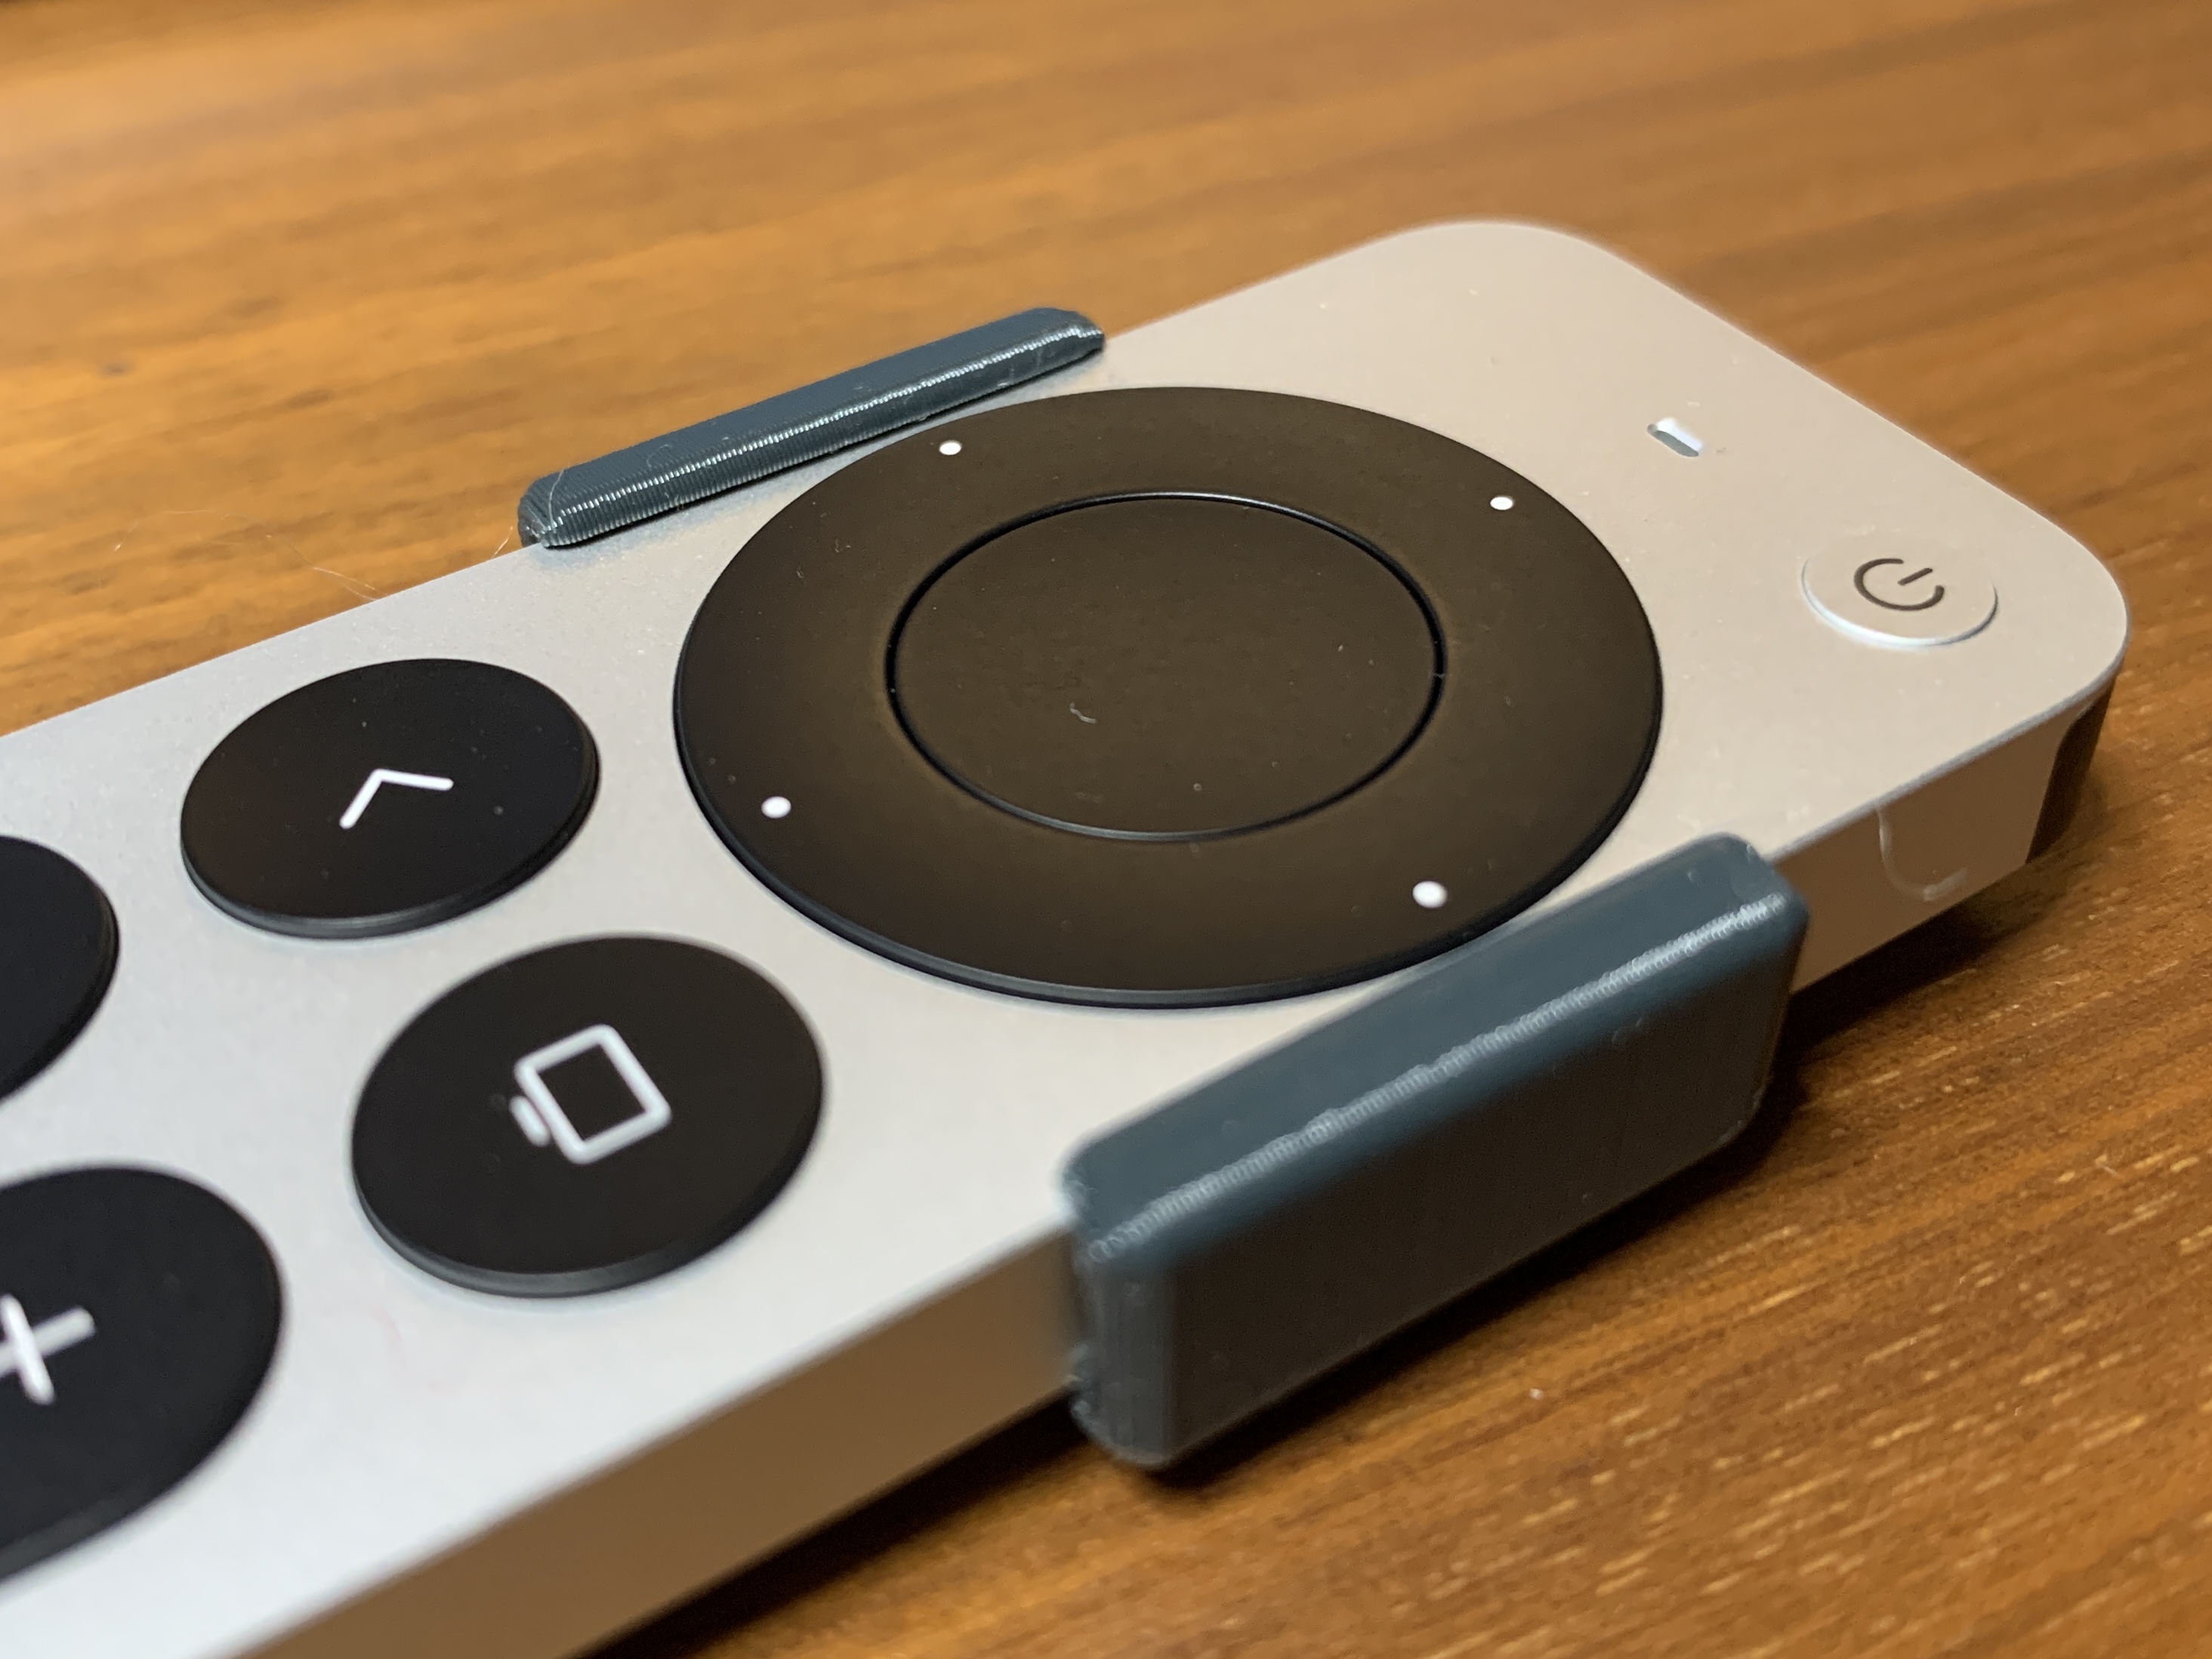 Apple TV remote Siri button blocker